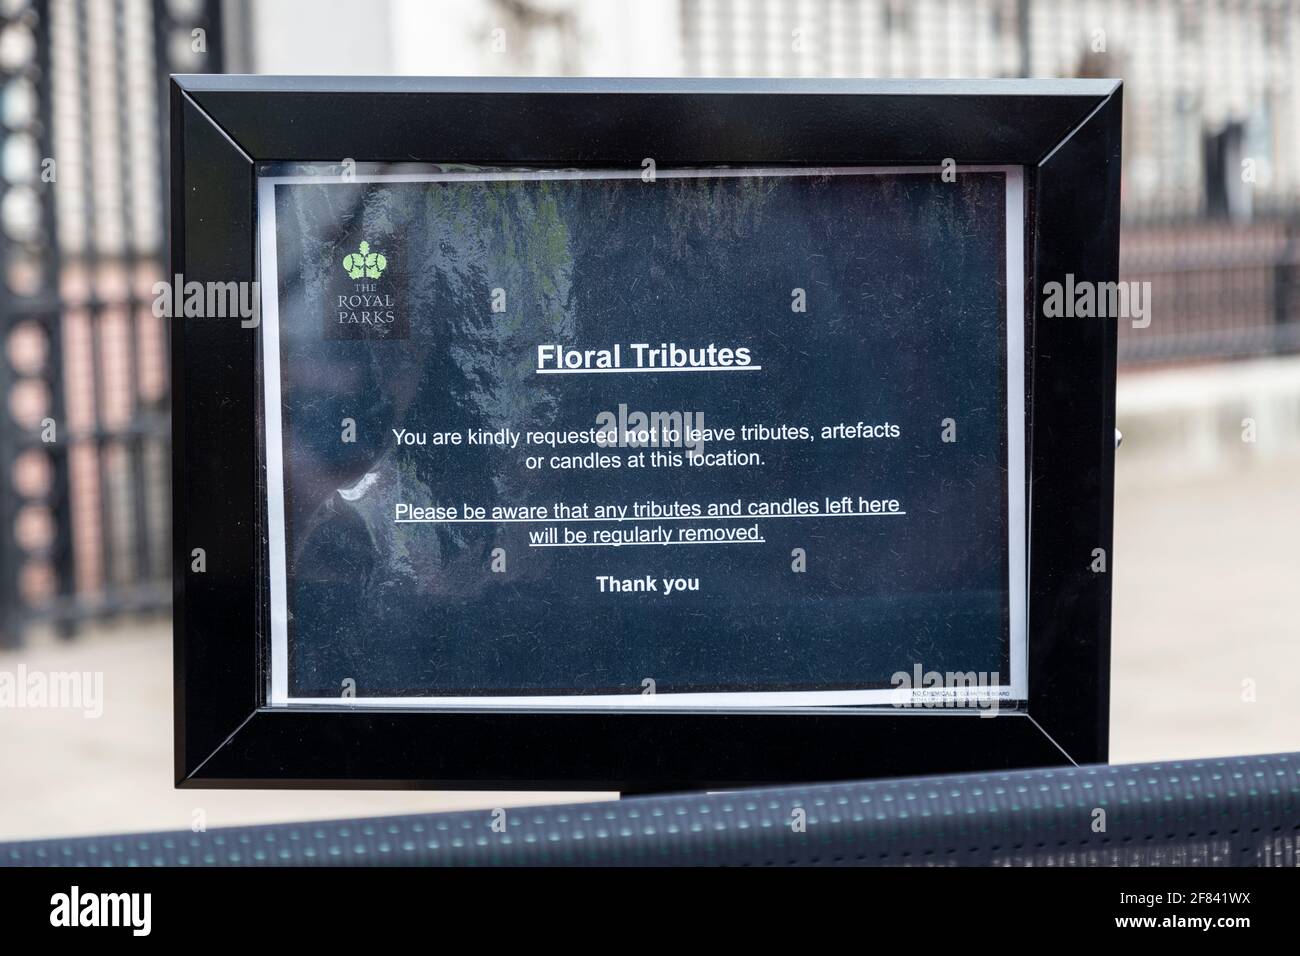 11 avril 2021, Londres, Royaume-Uni - Avis sur les hommages de fleurs devant Buckingham Palace après la mort du prince Philip, duc d'Édimbourg, le 9 avril Banque D'Images